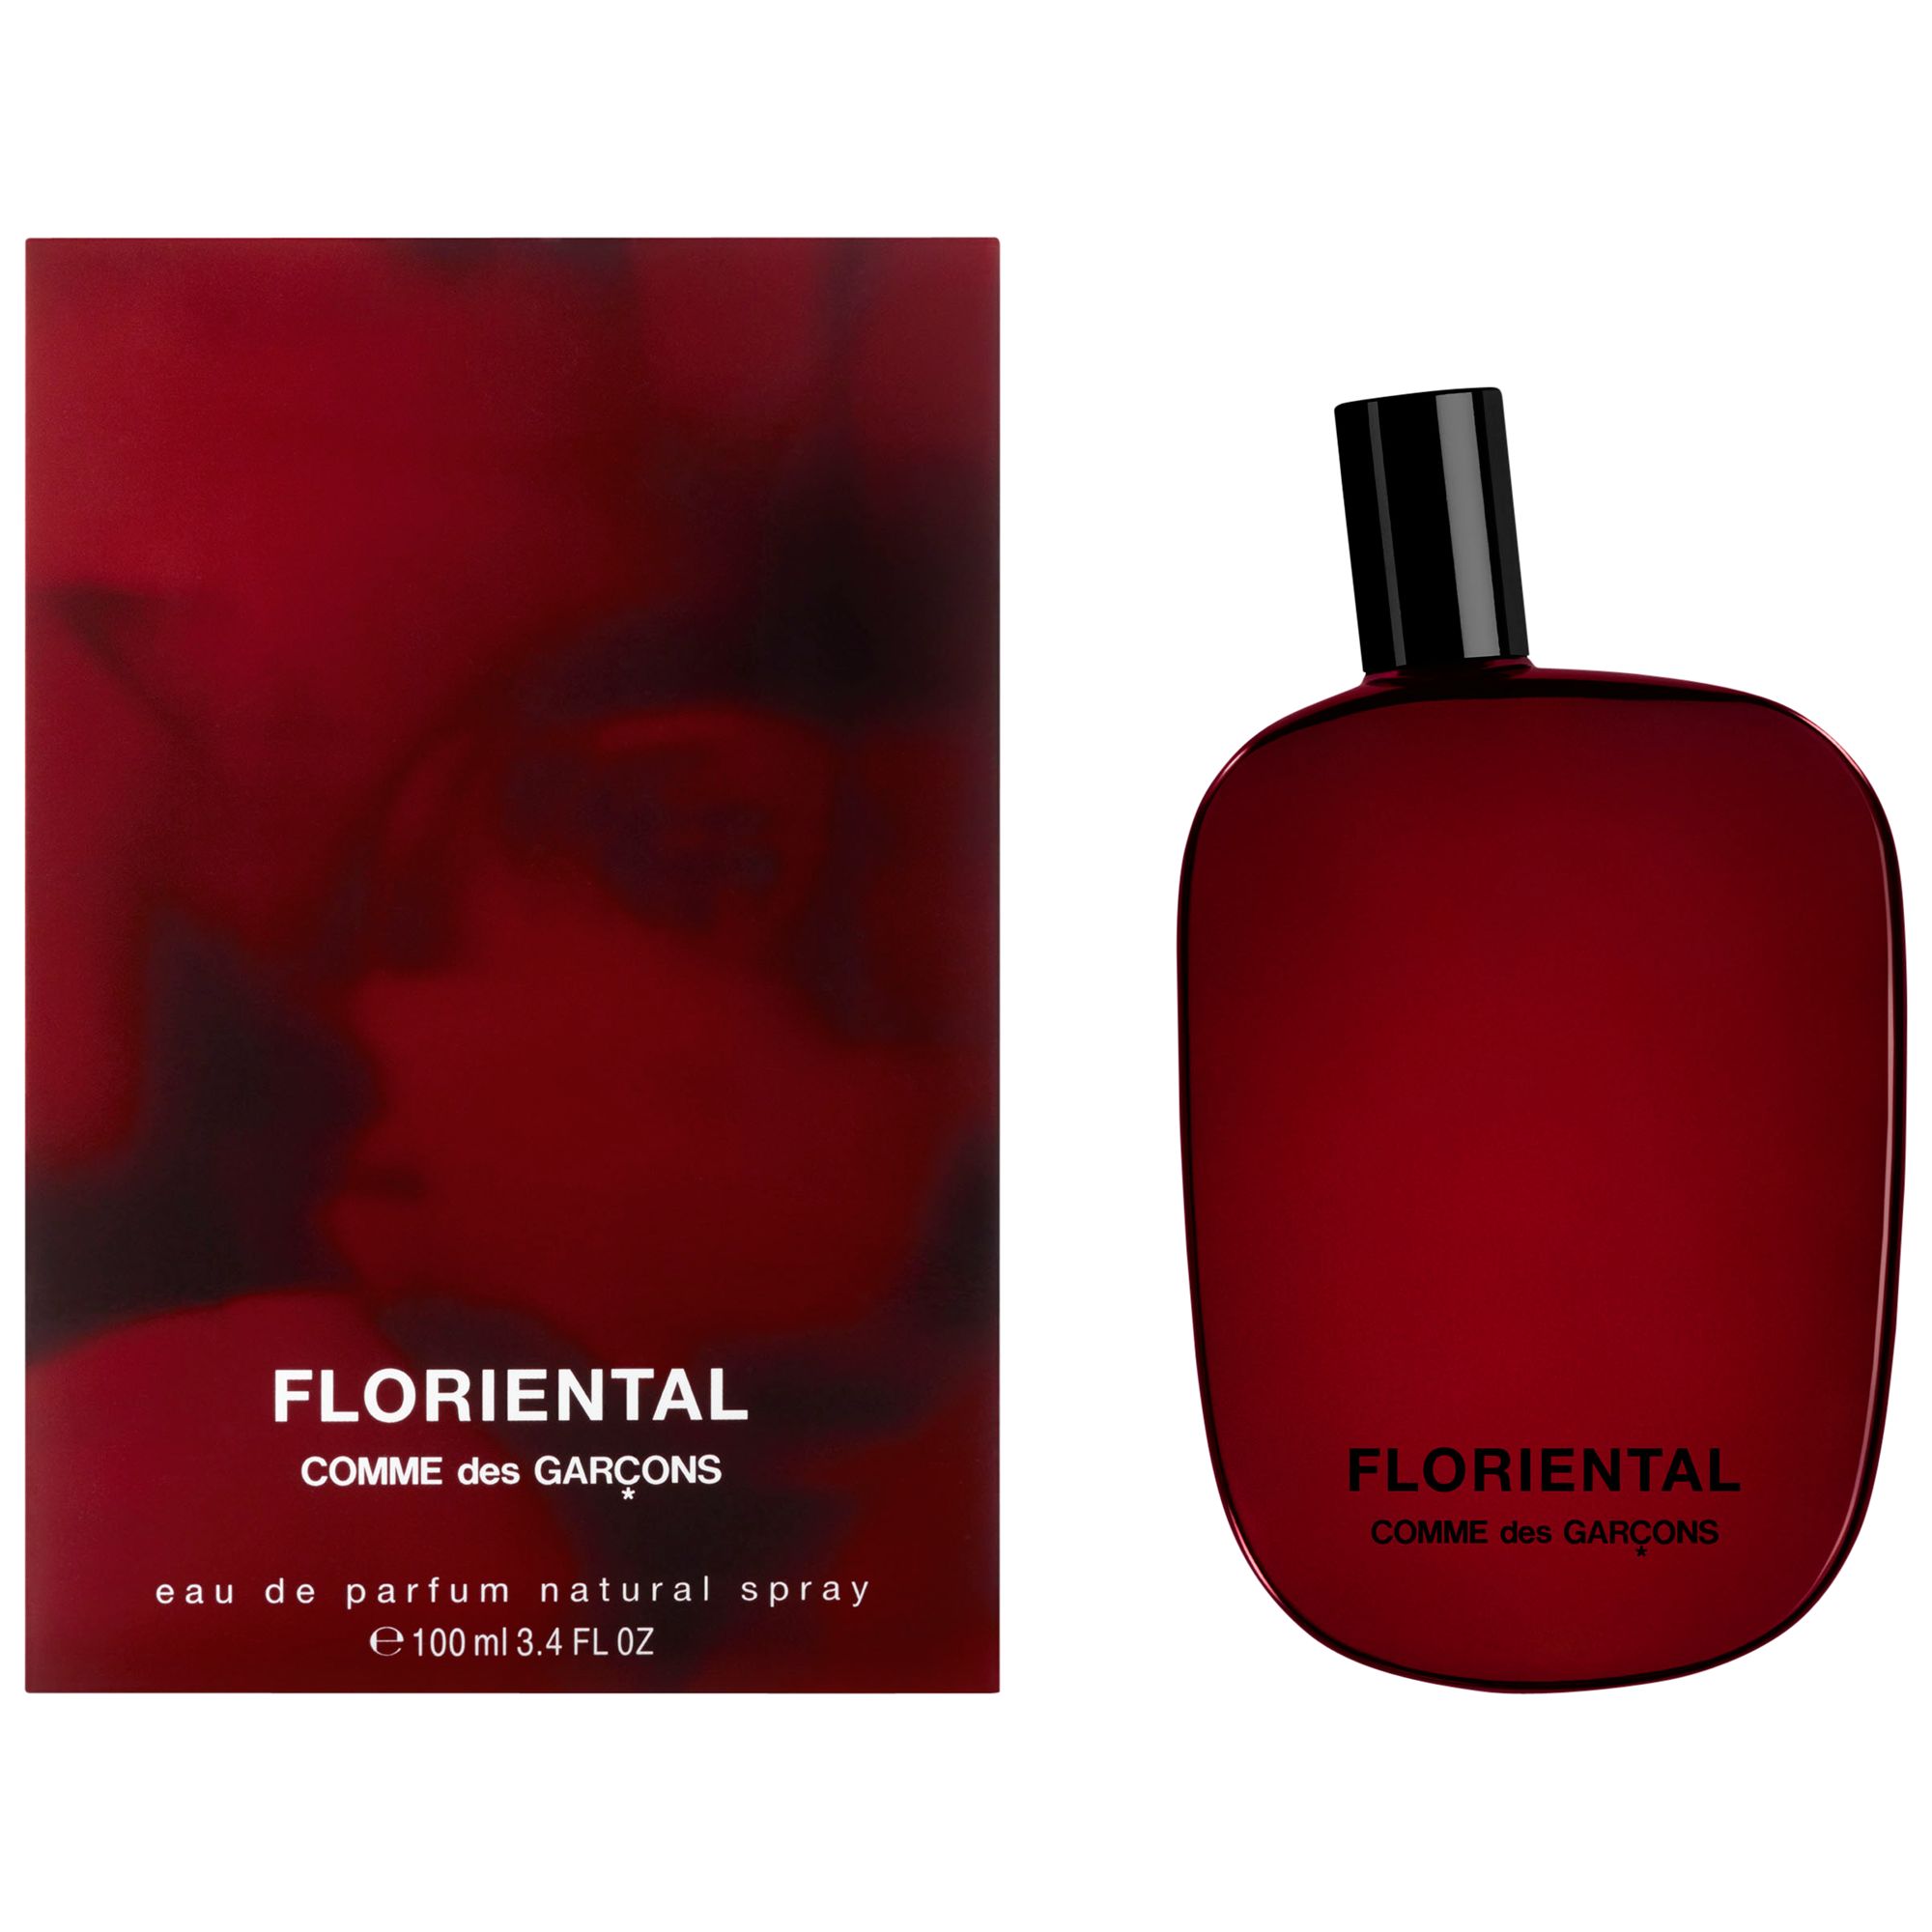 Comme des Garçons Floriental Eau de Parfum, 100ml at John Lewis & Partners